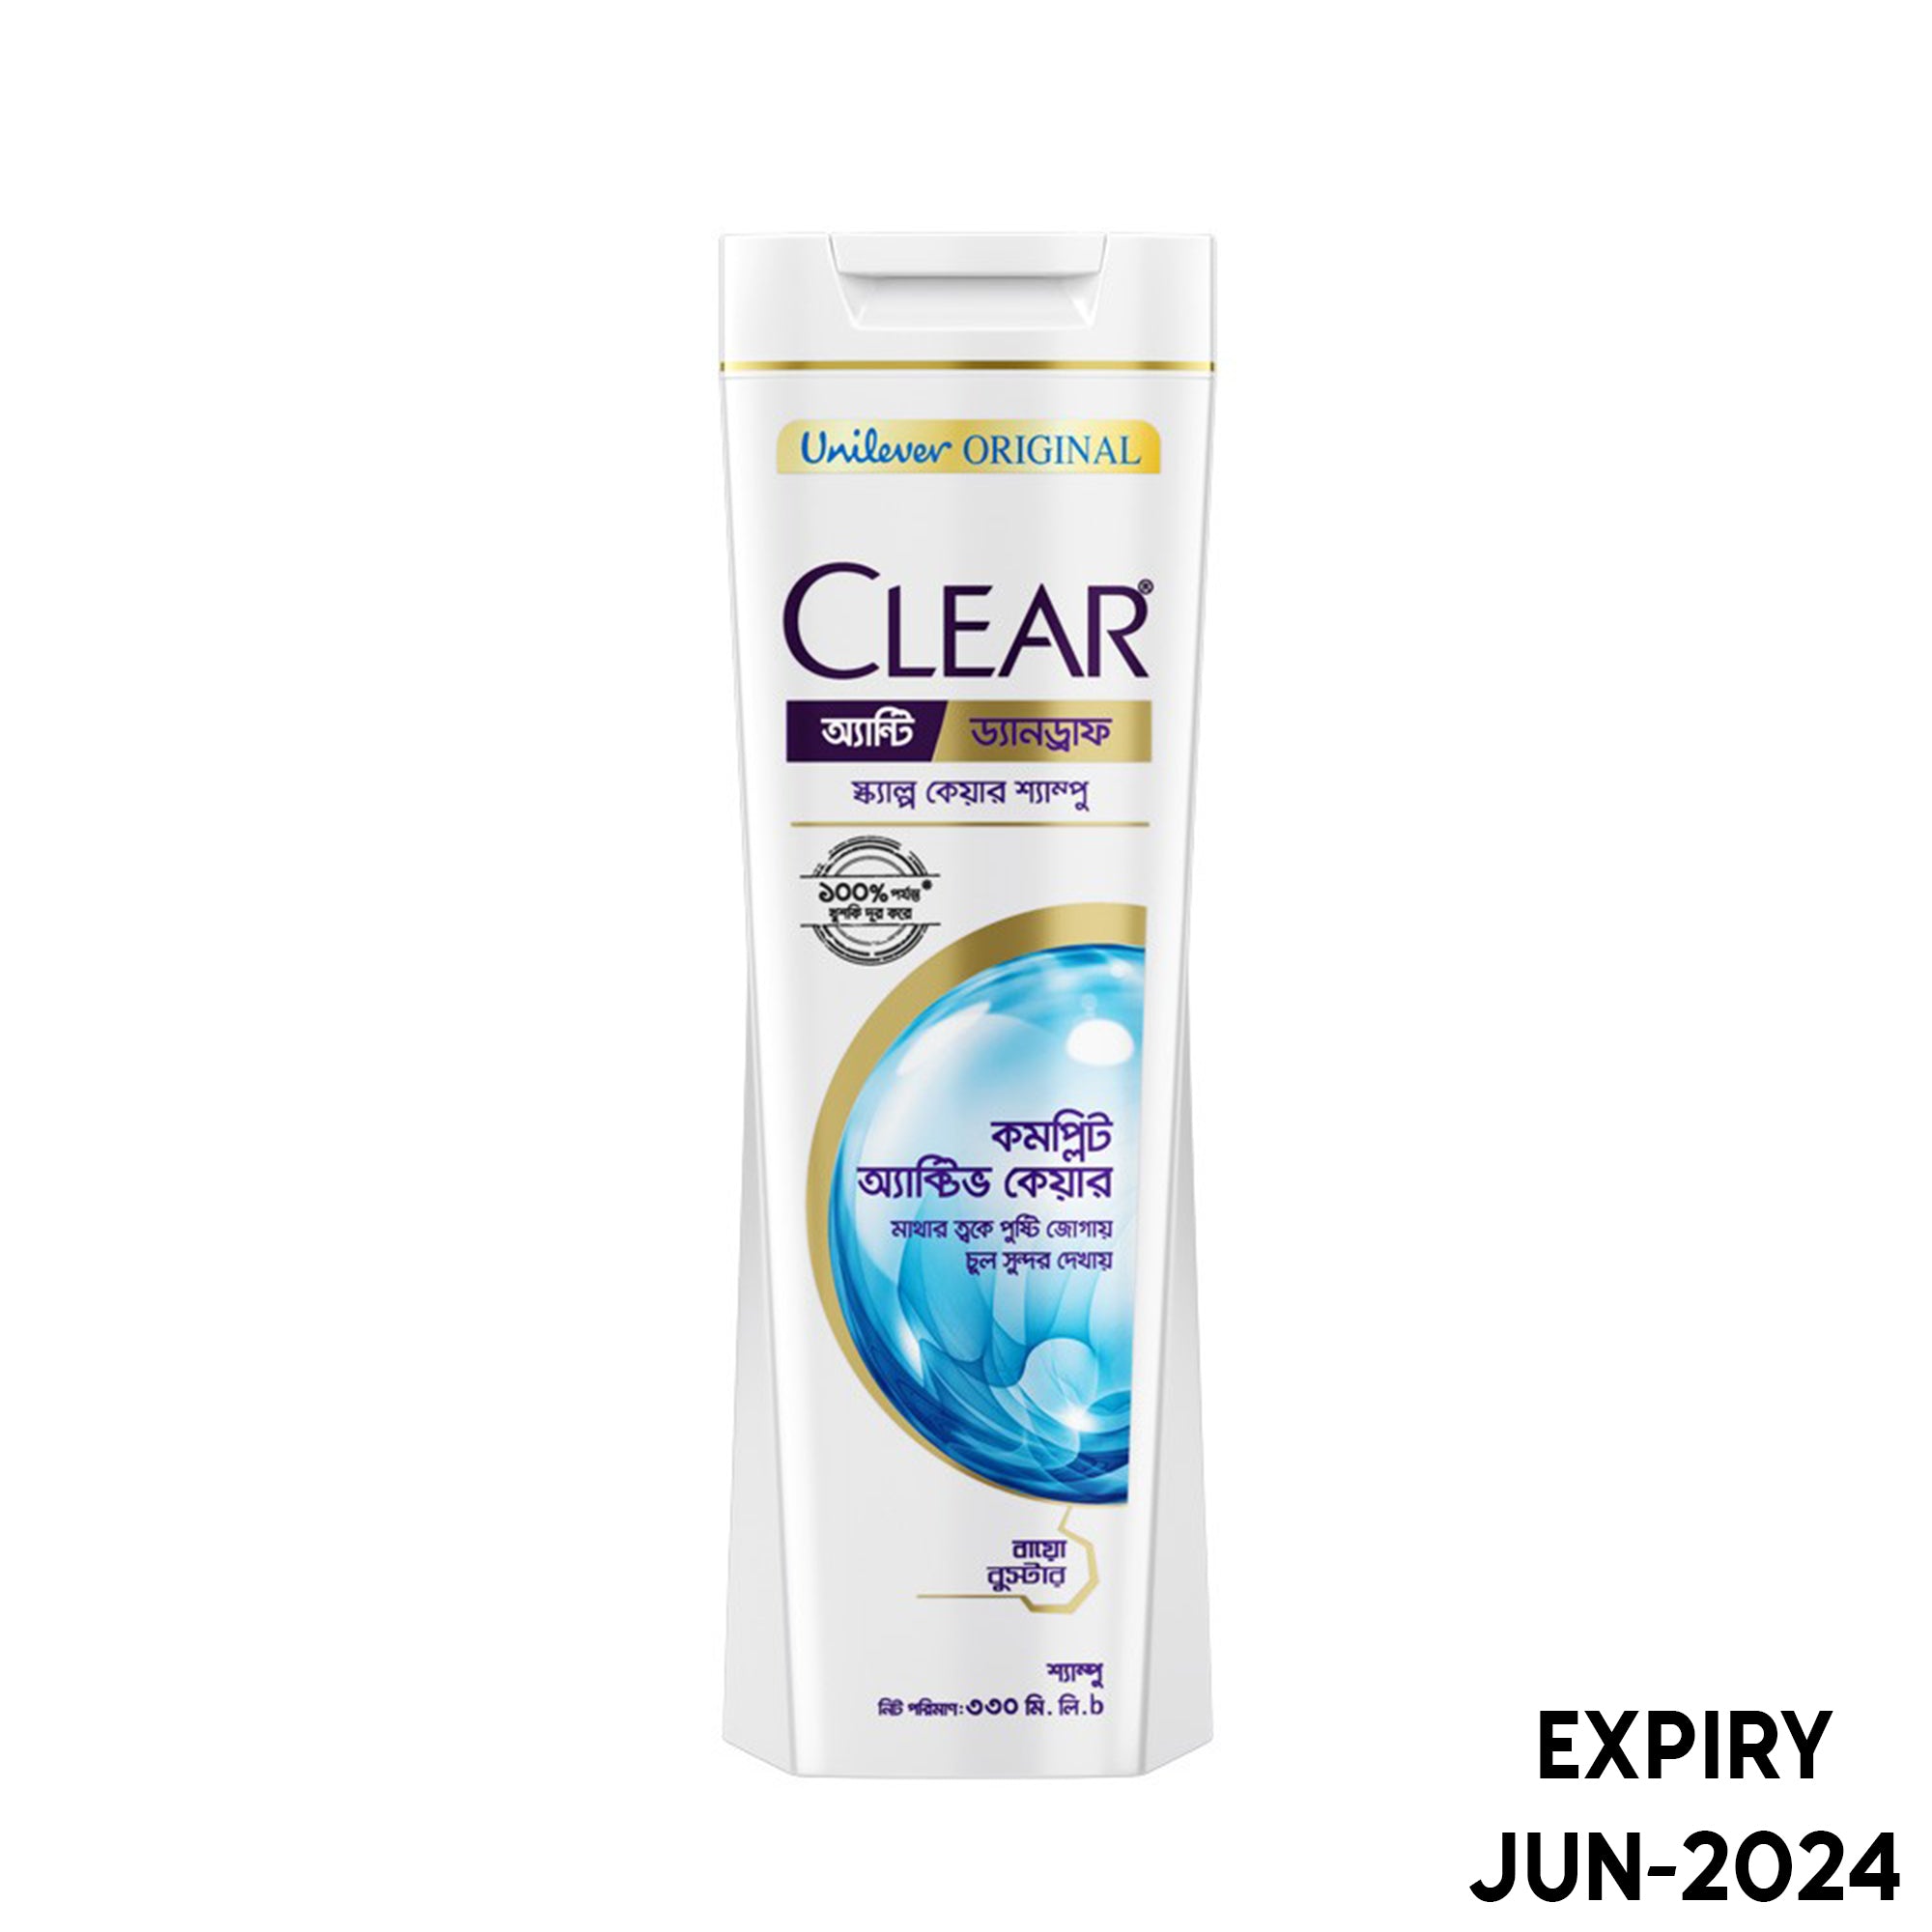 Clear Shampoo Complete Active Care Anti Dandruff (330ml)